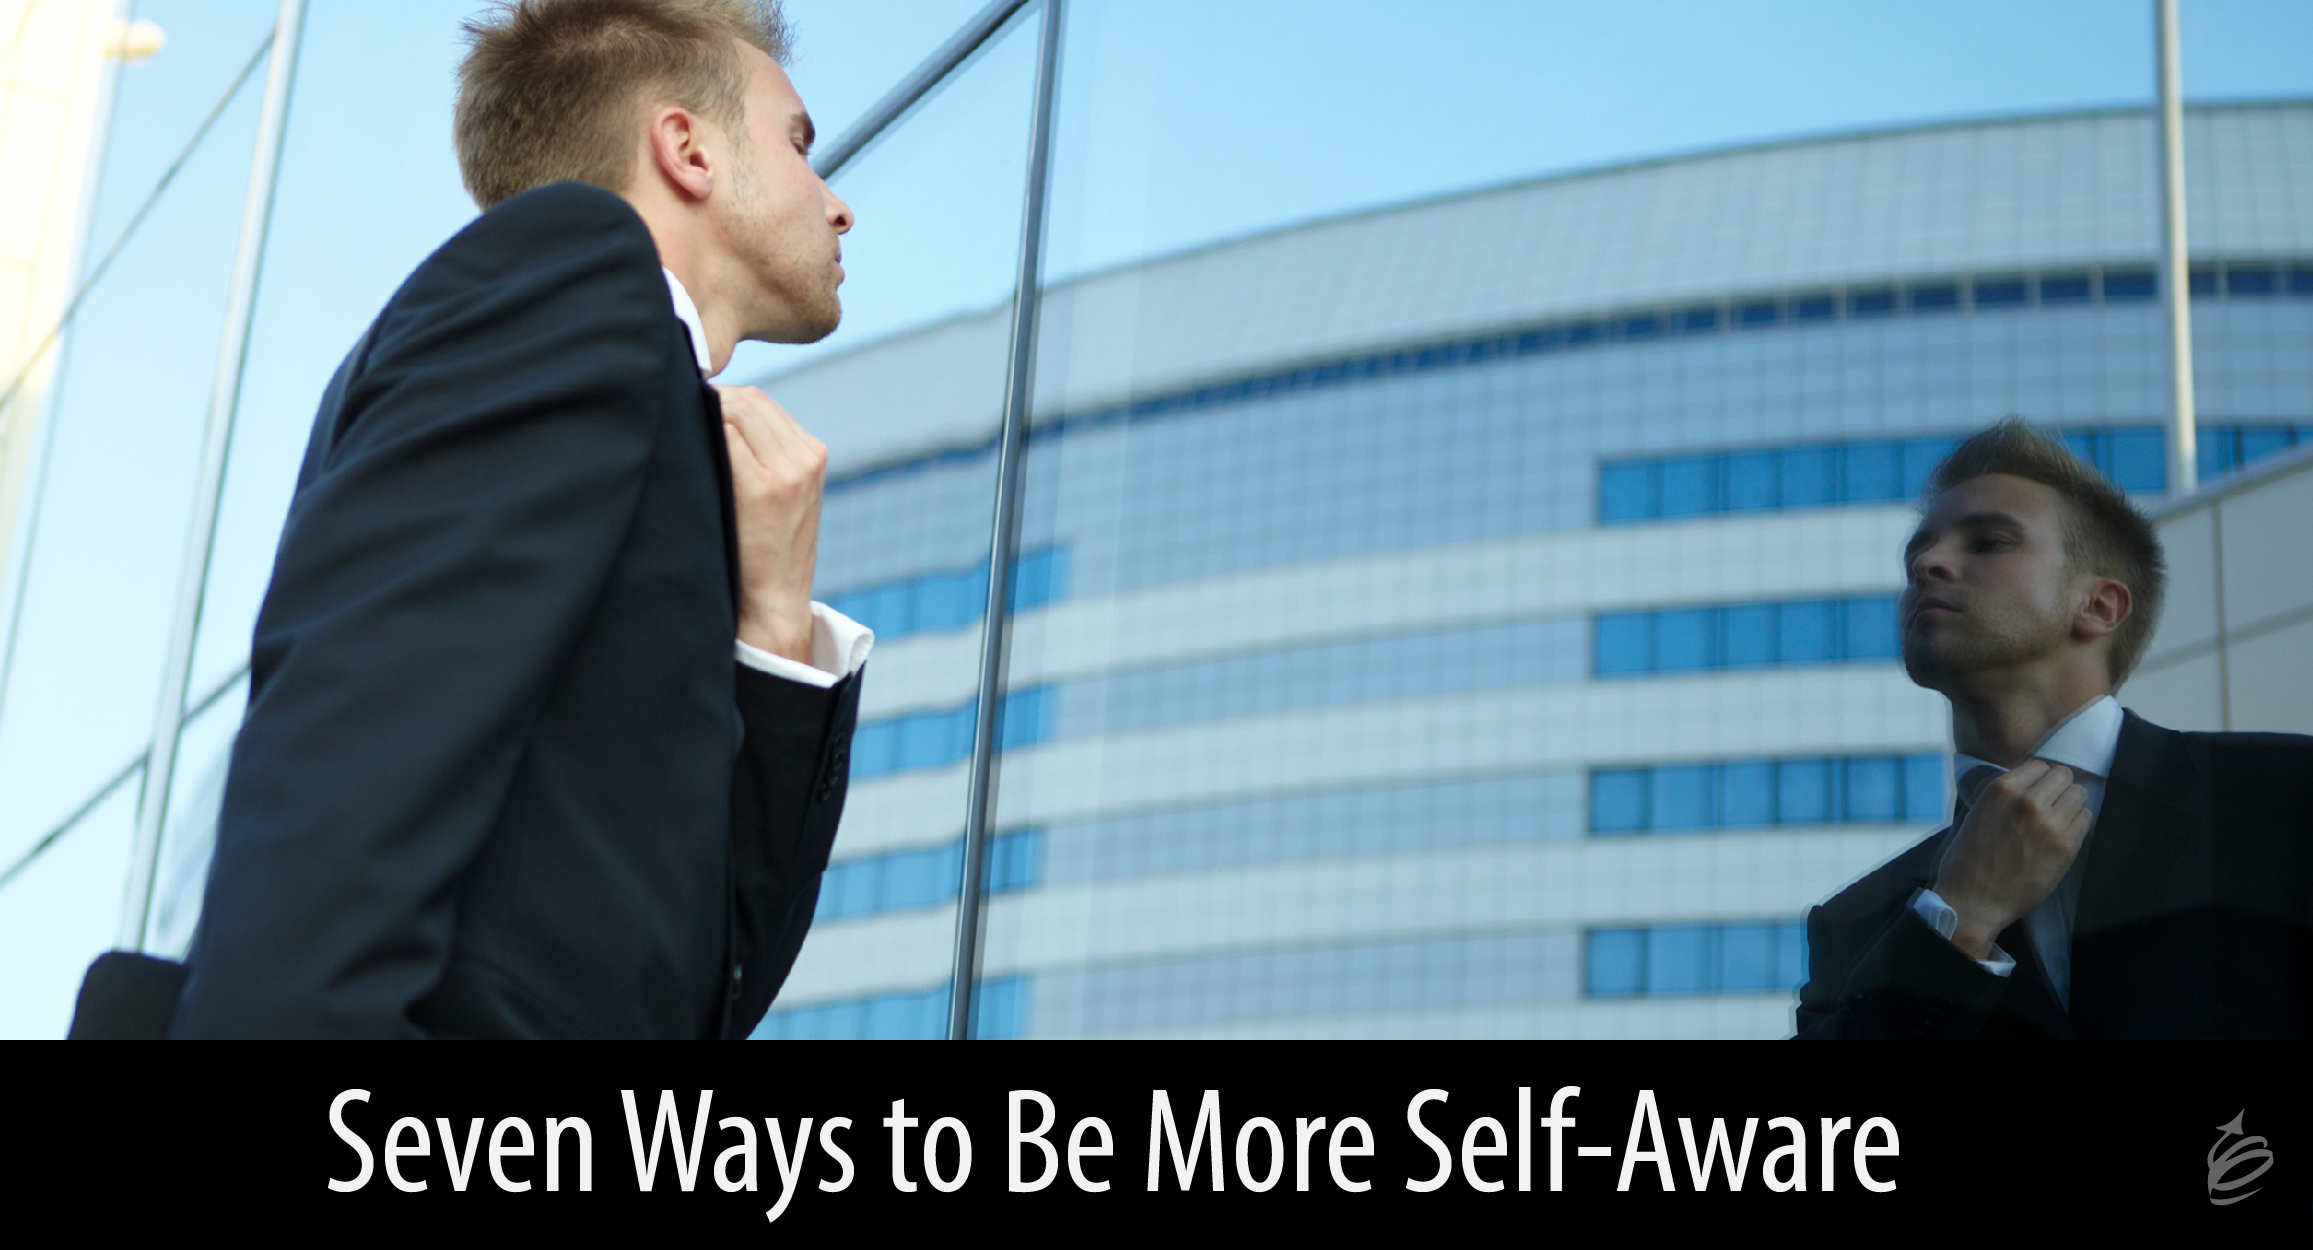 Be More Self-Aware